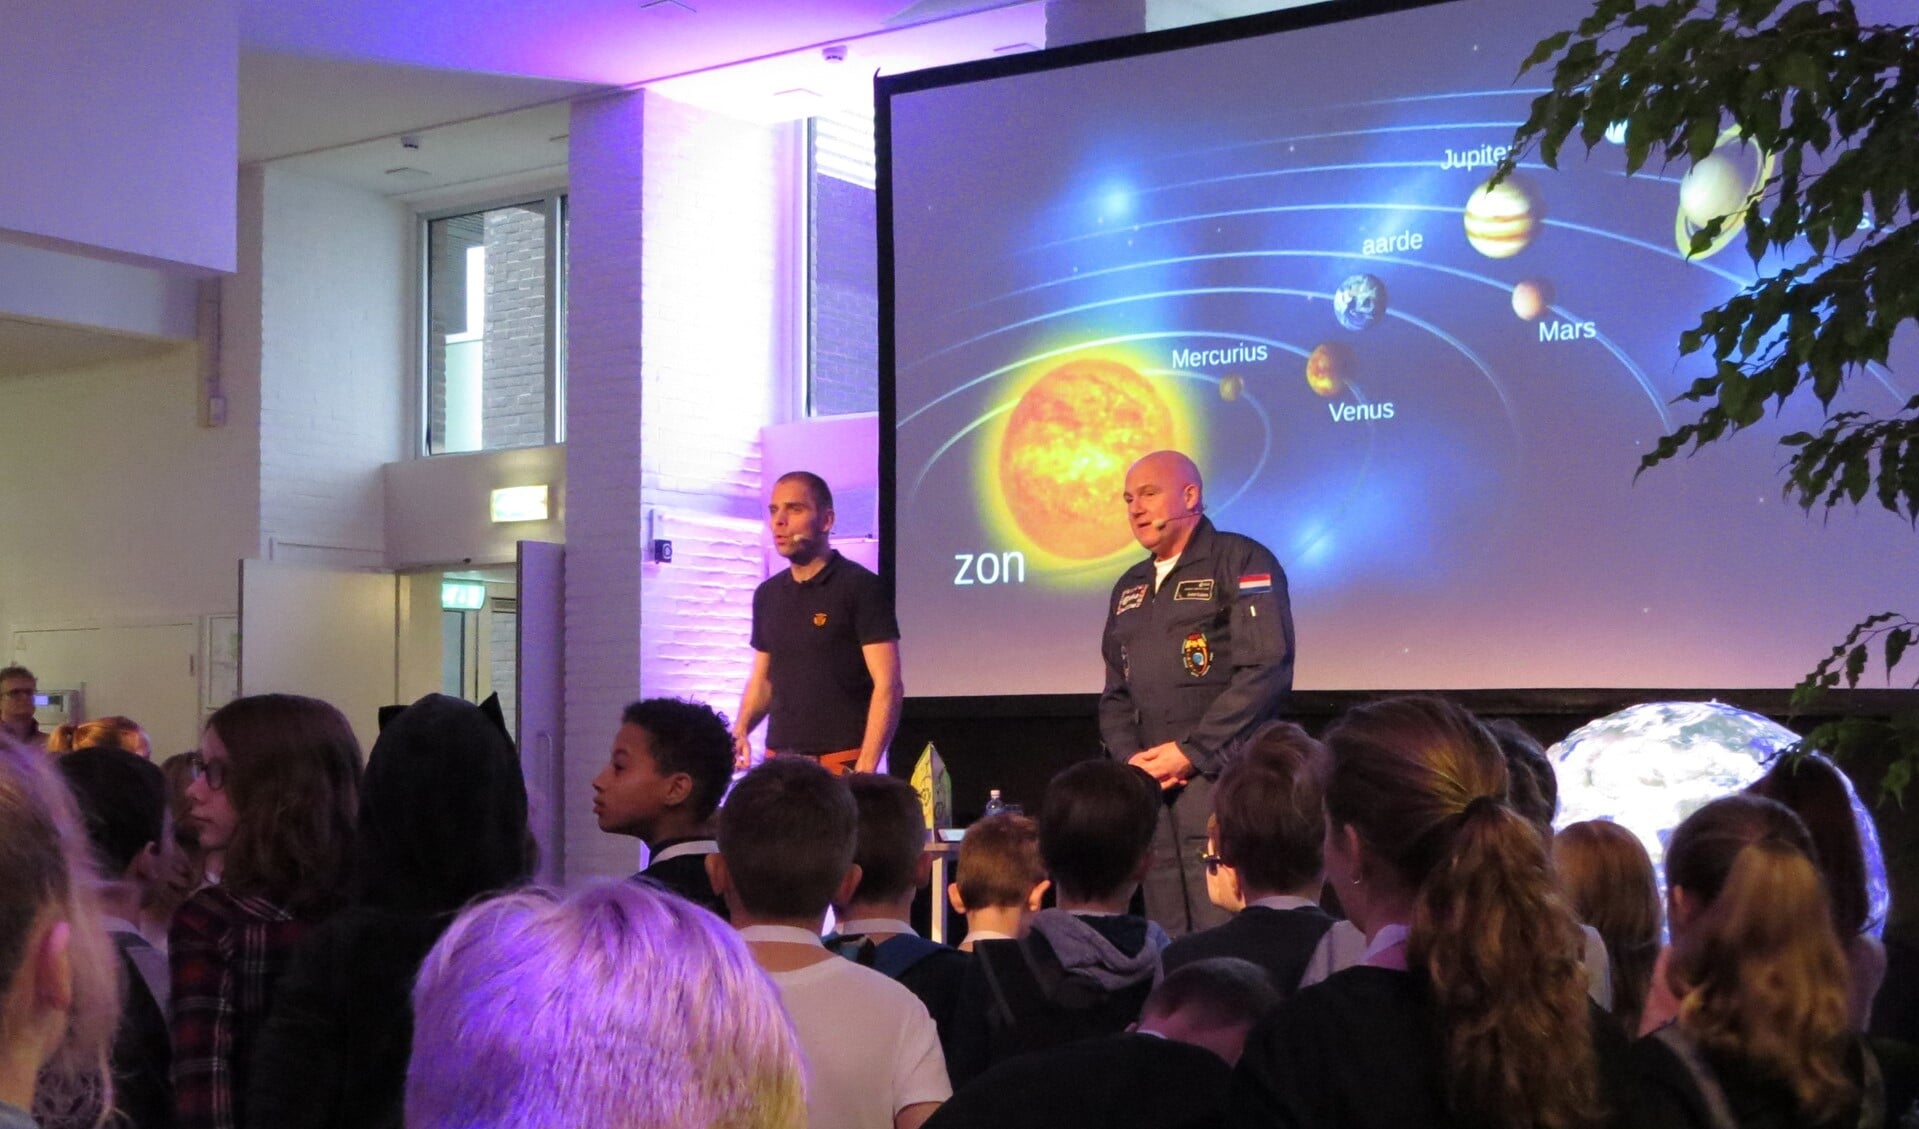 André Kuipers en Sander Koenen (links) gooiden zojuist een balletje de zaal in om uit te leggen hoe een raket het handigst in een baan om de aarde kan worden gebracht. Foto: Josée Gruwel